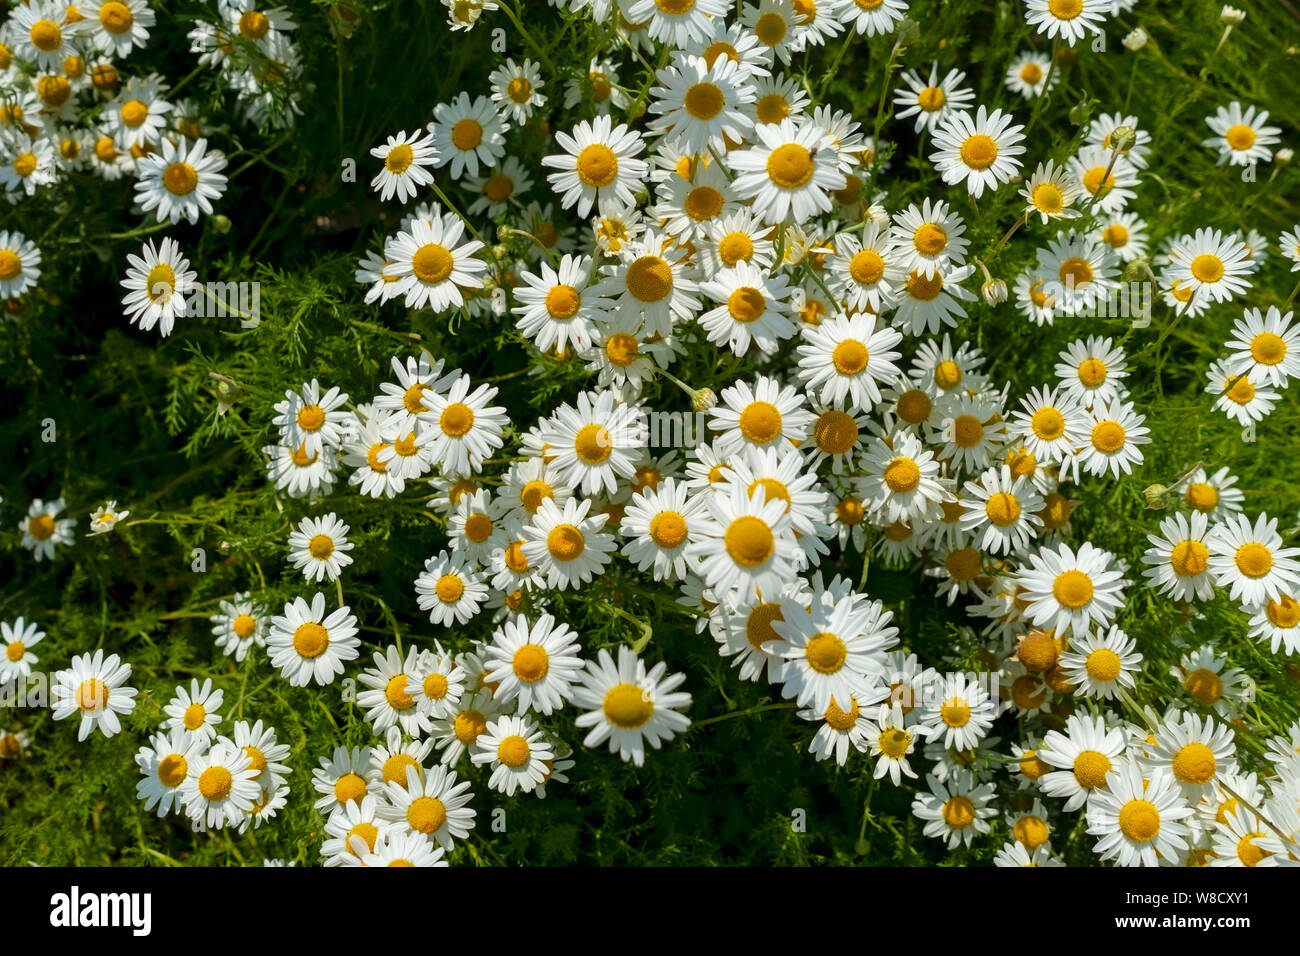 Gros plan de fleurs camomille blanches fleurs fleurir en été Angleterre Royaume-Uni Grande-Bretagne Banque D'Images